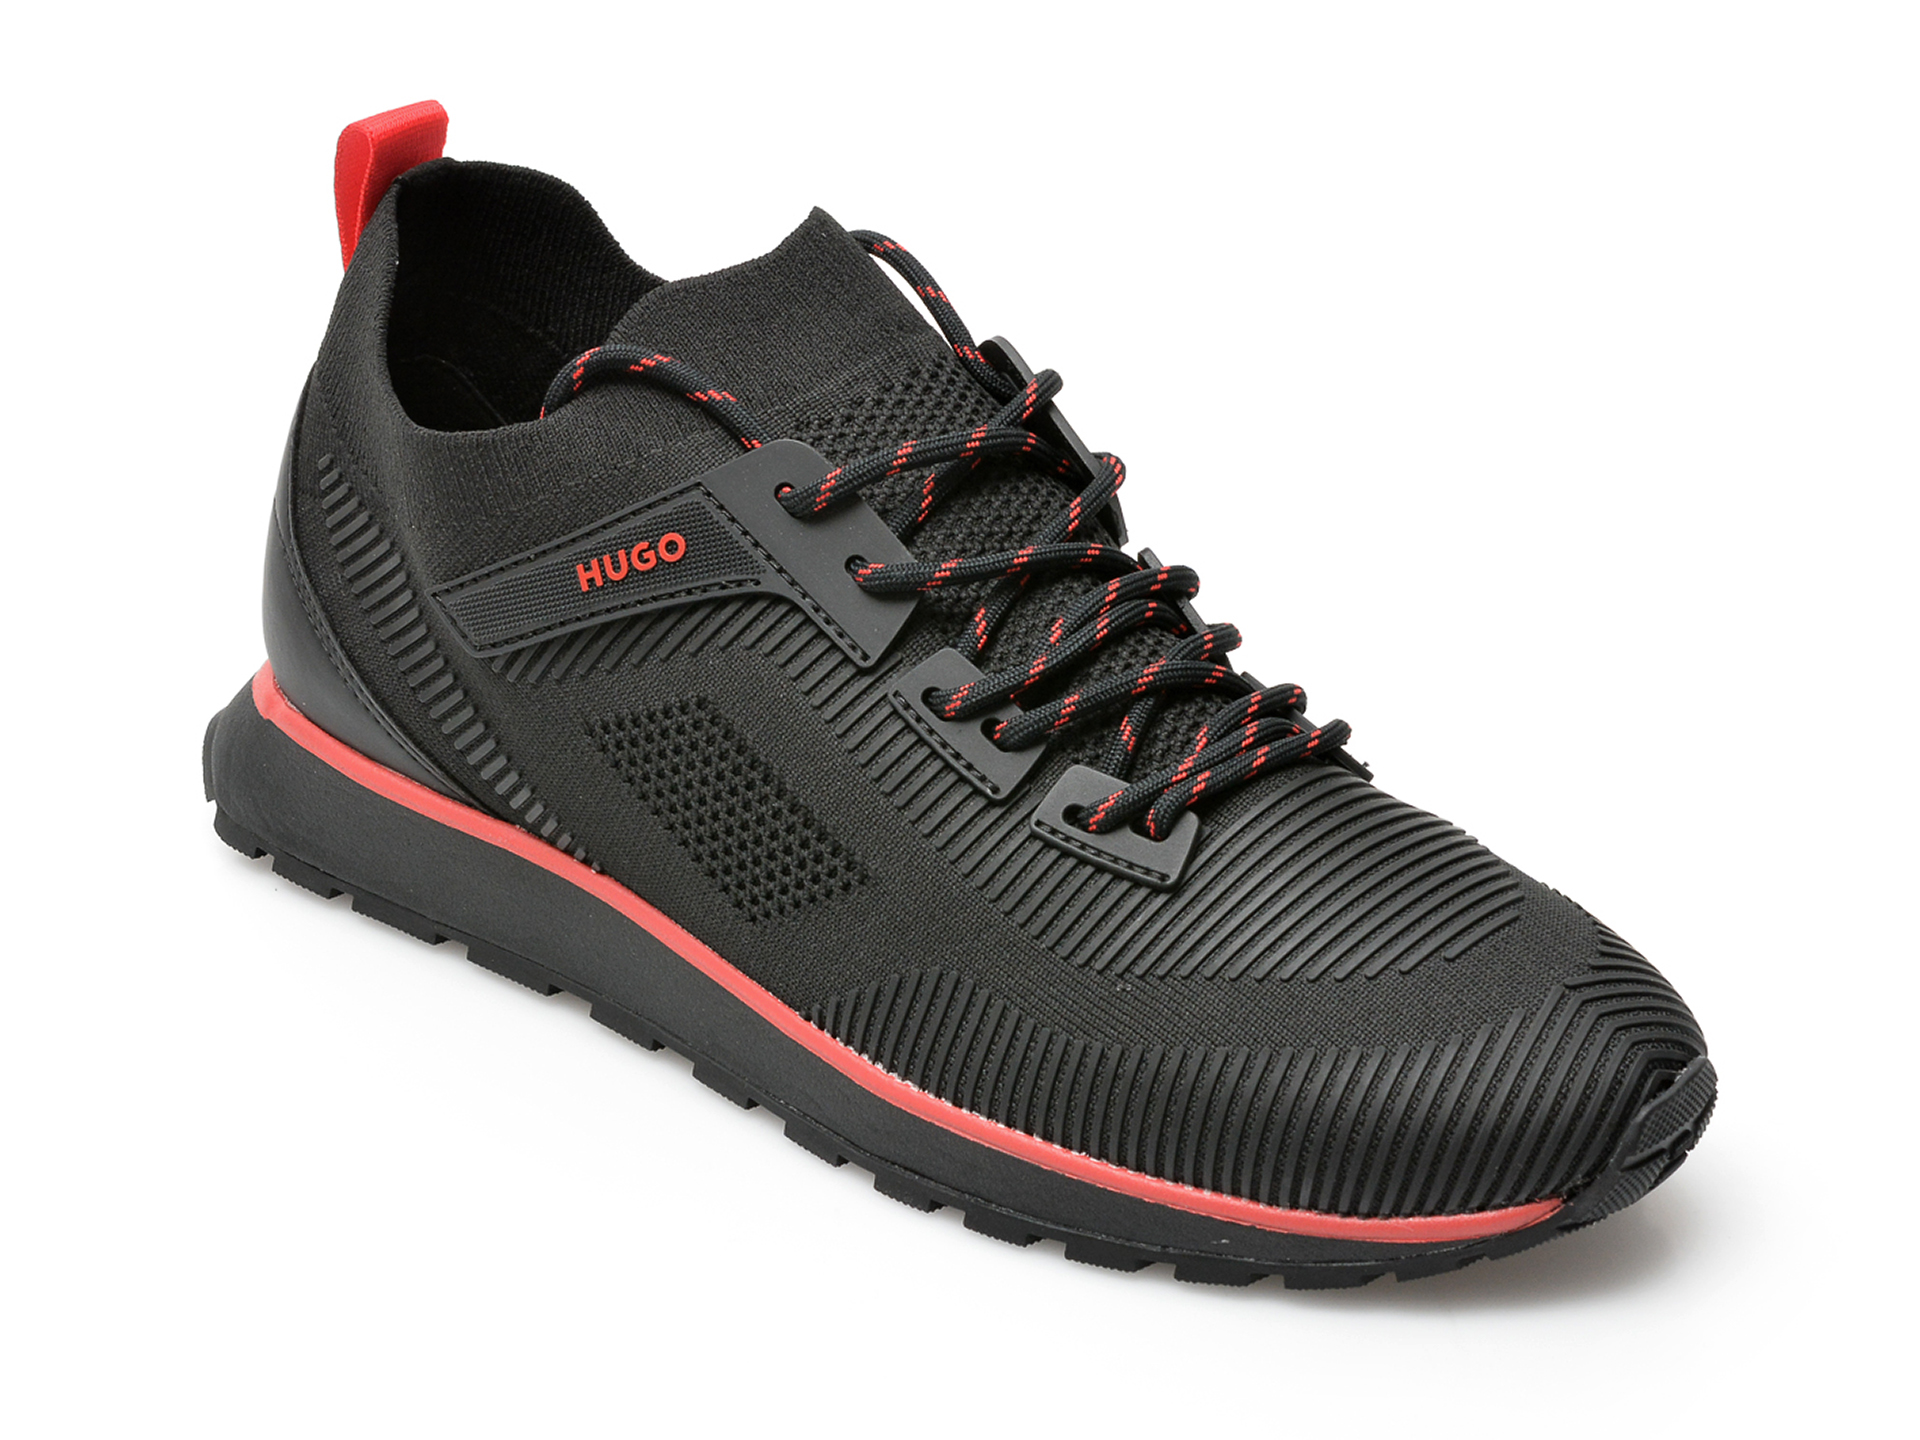 Pantofi sport HUGO BOSS negri, 1301, din material textil /barbati/pantofi